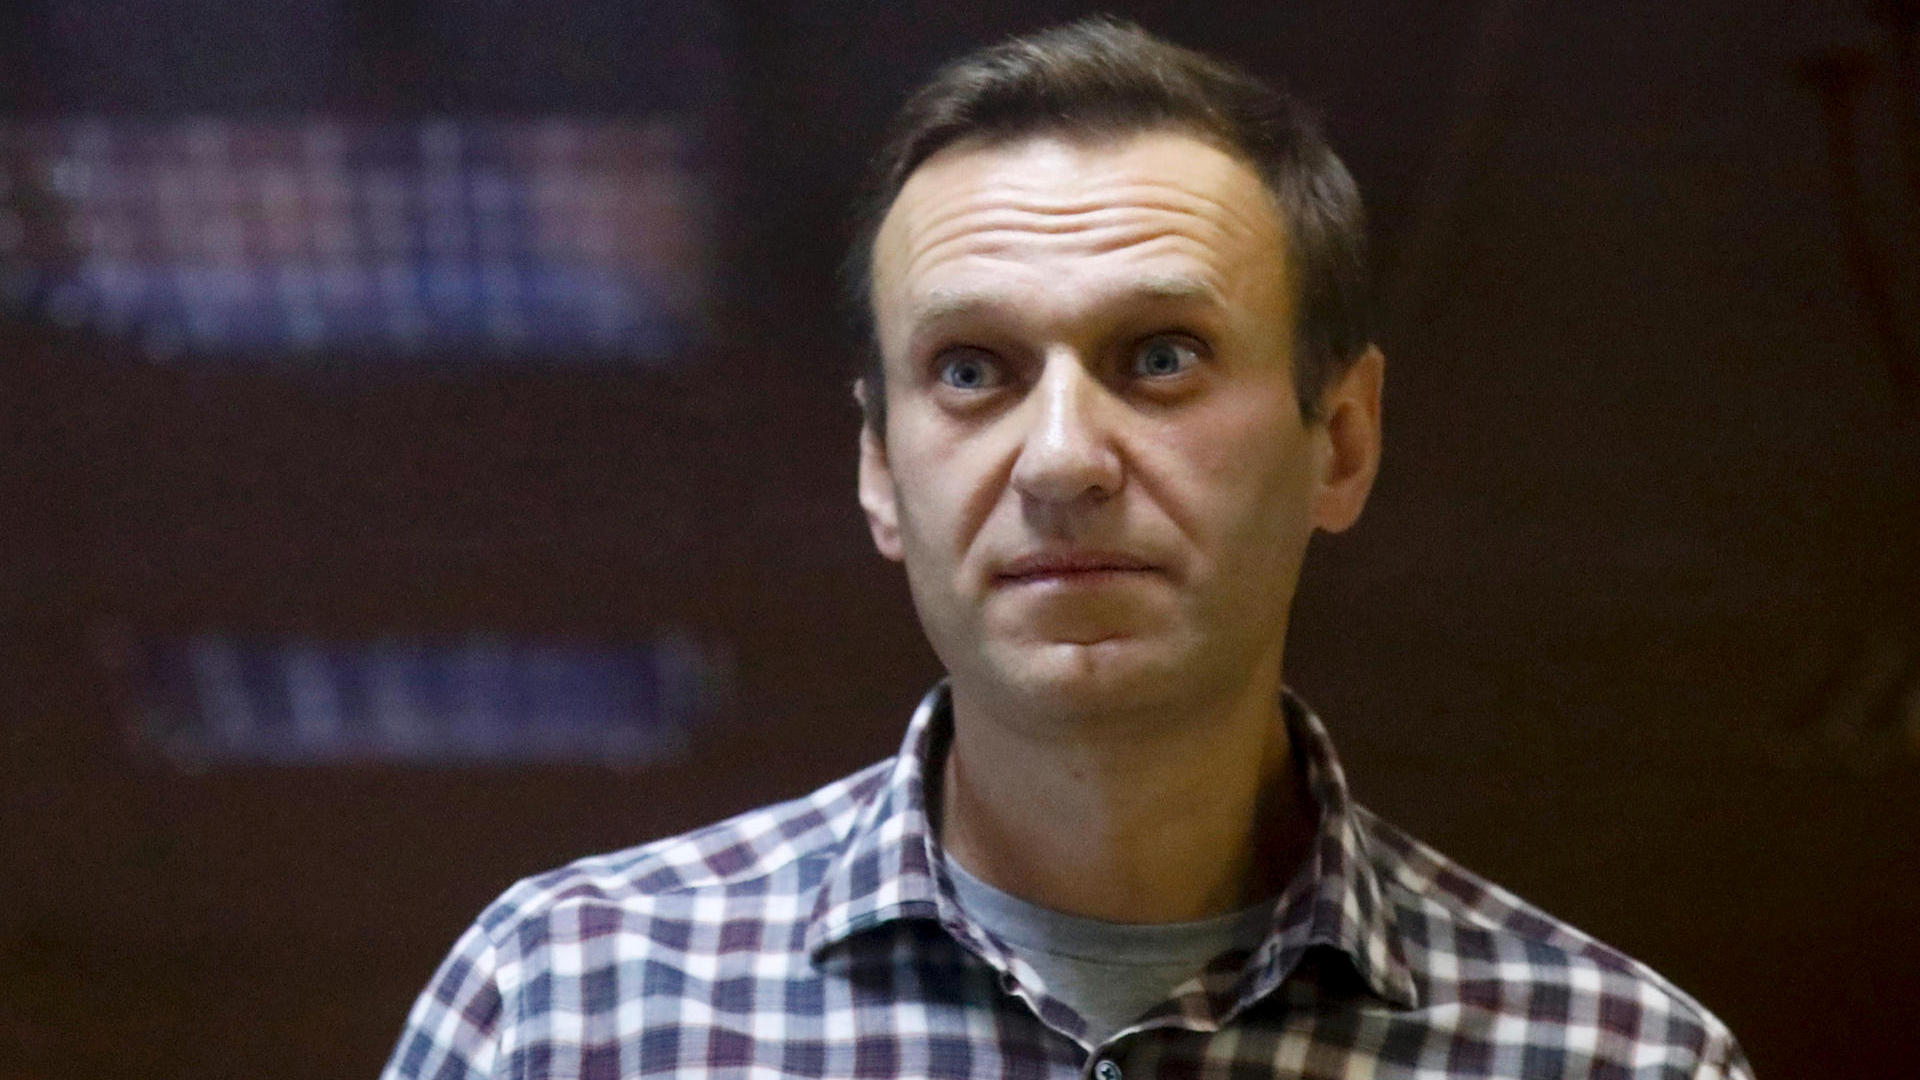 Lage um Nawalny dramatisch – Tochter appelliert an Gefängnisbehörden